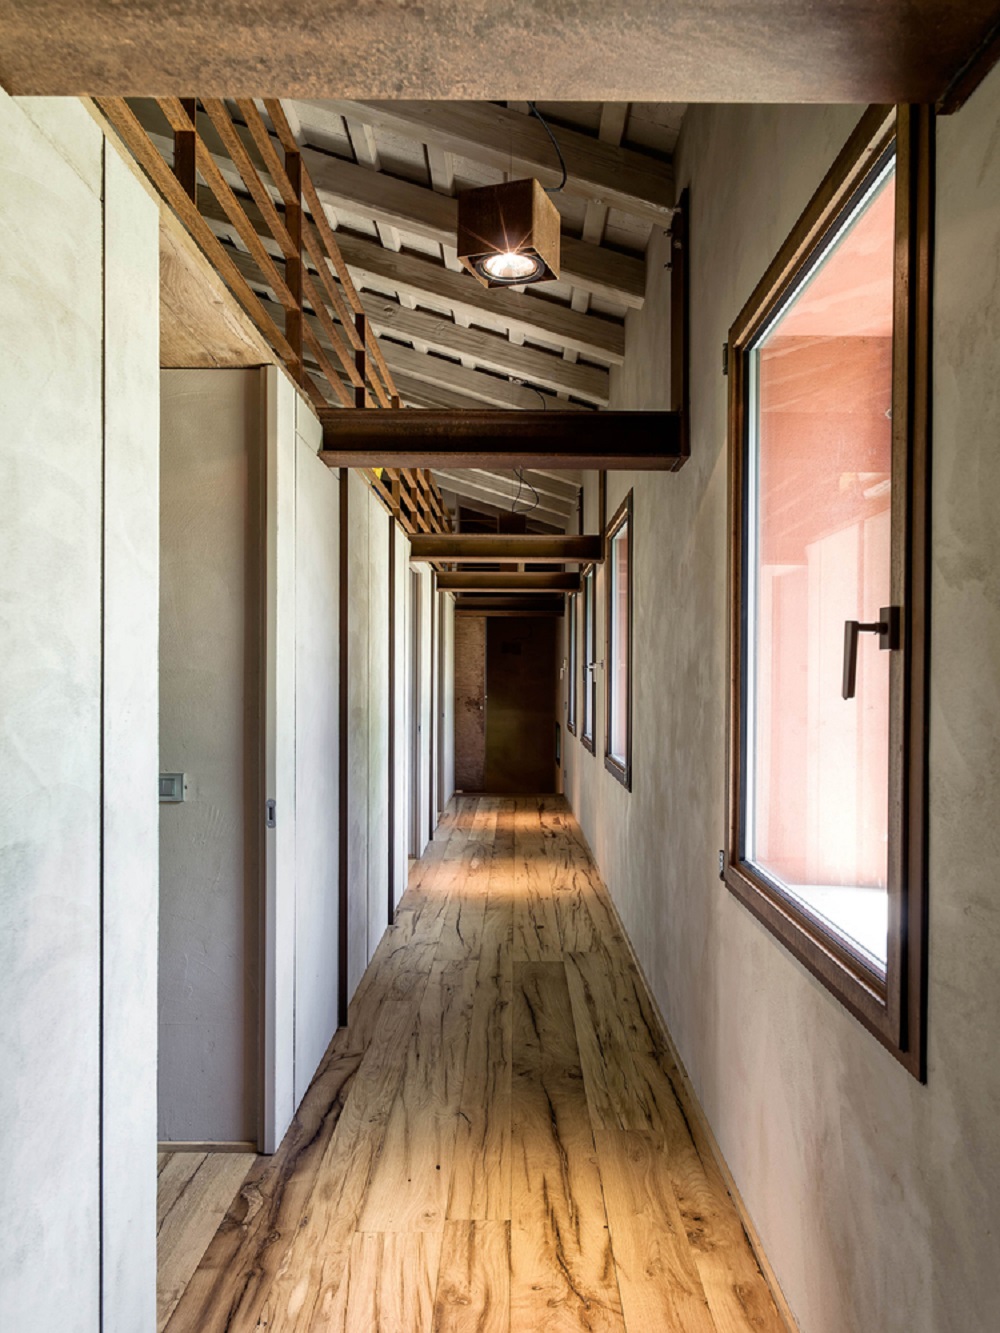 Toàn bộ nội thất ngôi nhà 450m2 đều sử dụng chất liệu gỗ truyền thống.